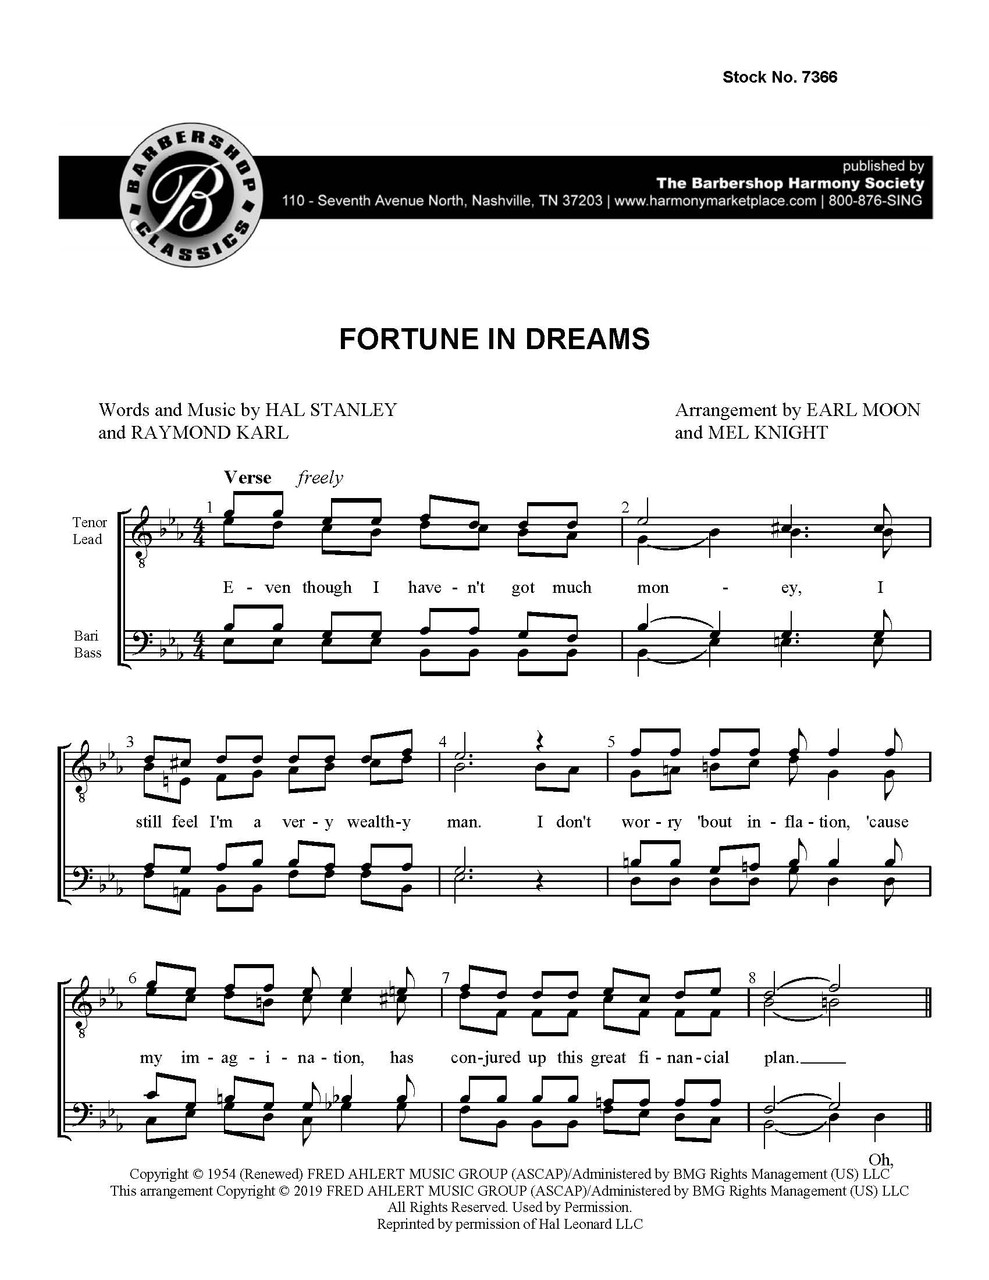 Fortune In Dreams (TTBB) (arr.  Knight/Moon)